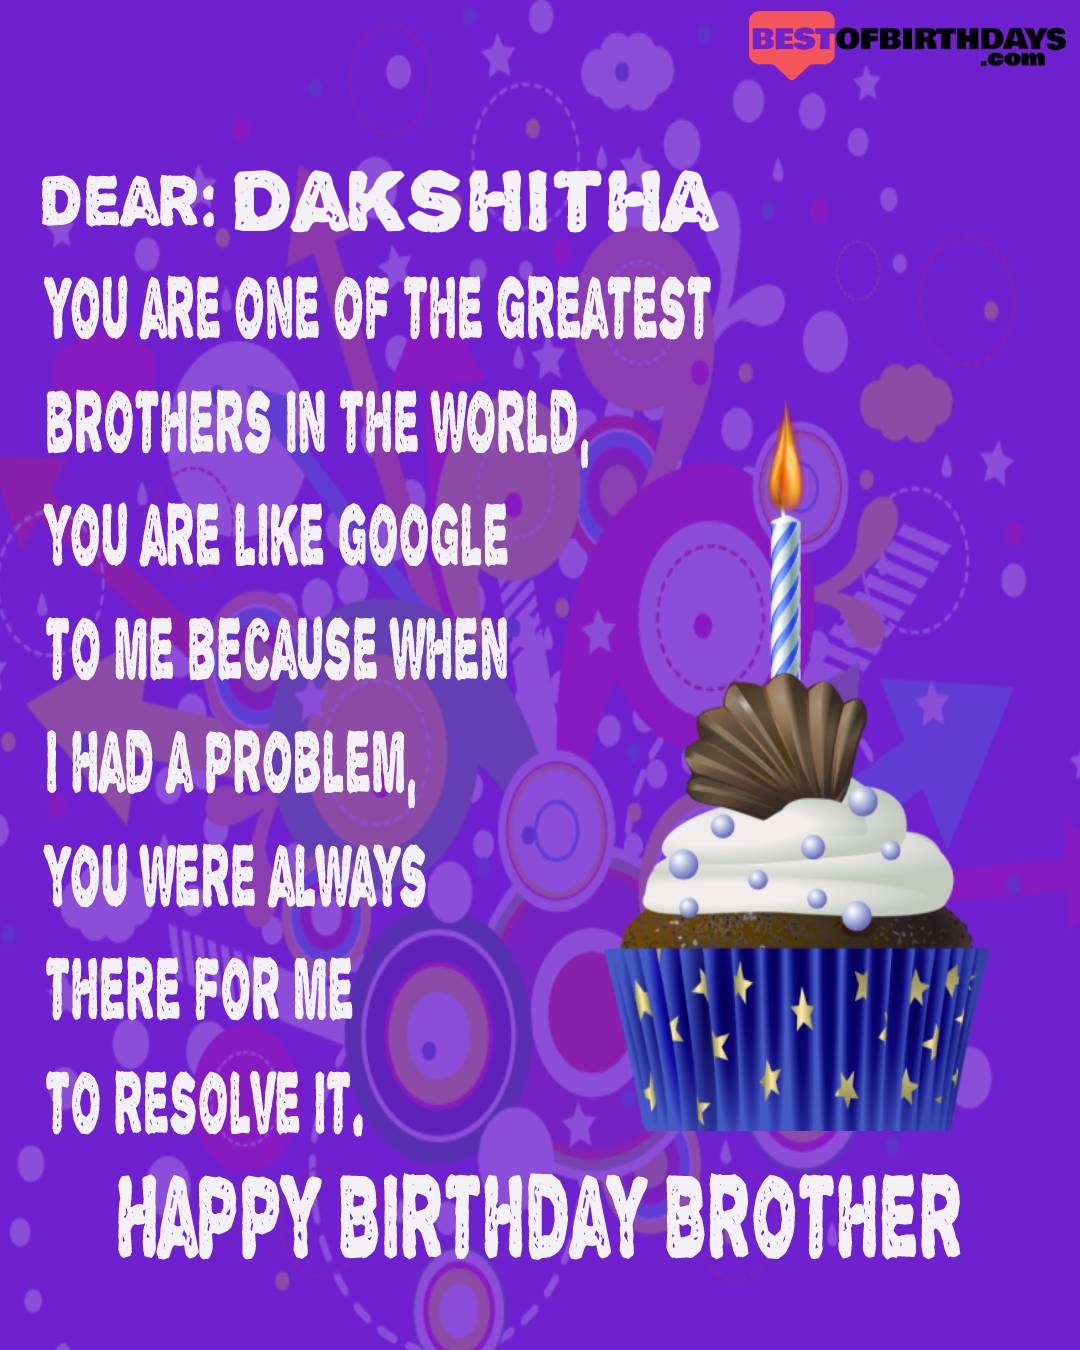 Happy birthday dakshitha bhai brother bro